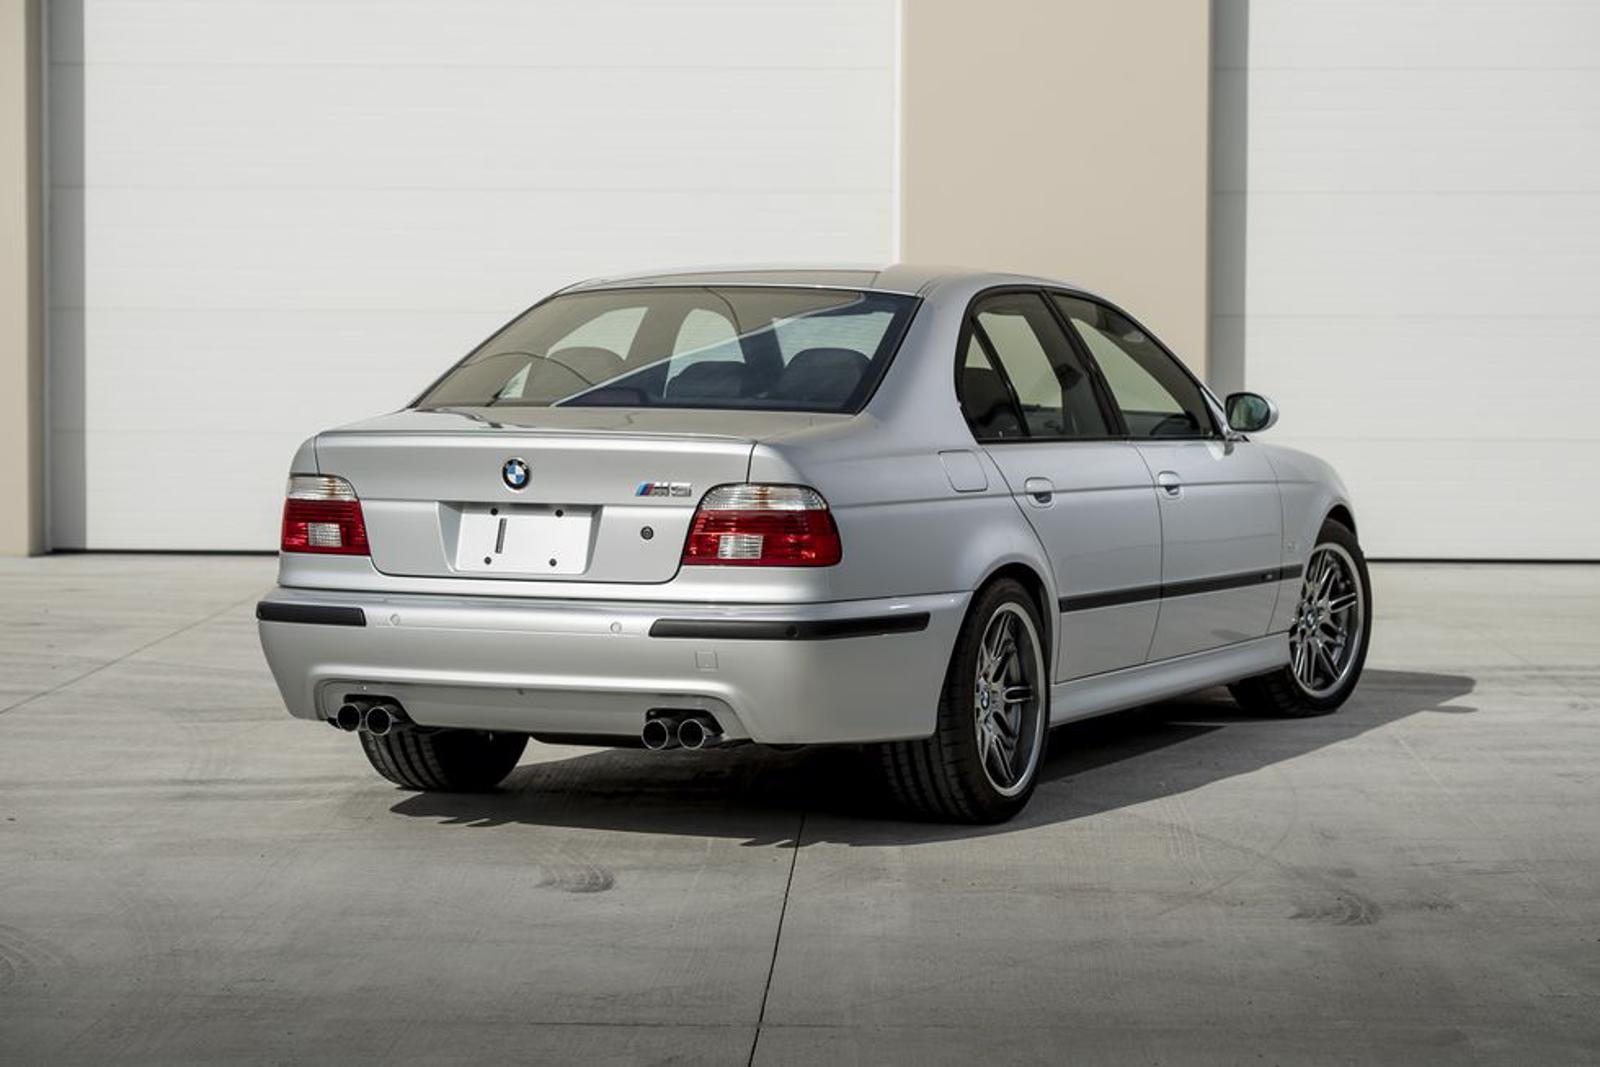 BMW E39 M5 สภาพนางฟ้าไมล์น้อย อาจถูกประมูลในราคาสูงถึง